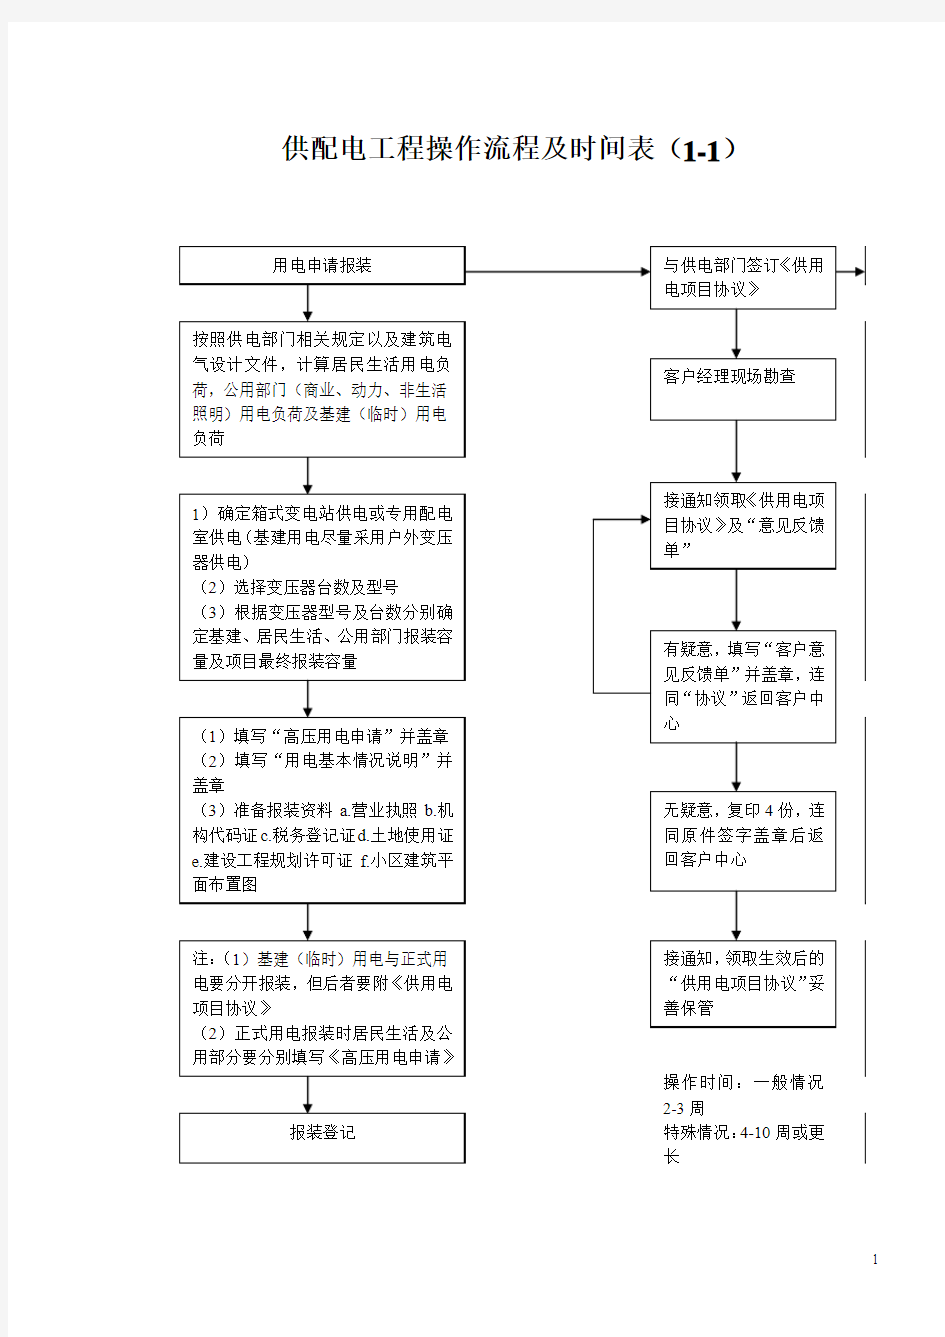 河南省供电公司供配电工程流程规范(最新版)